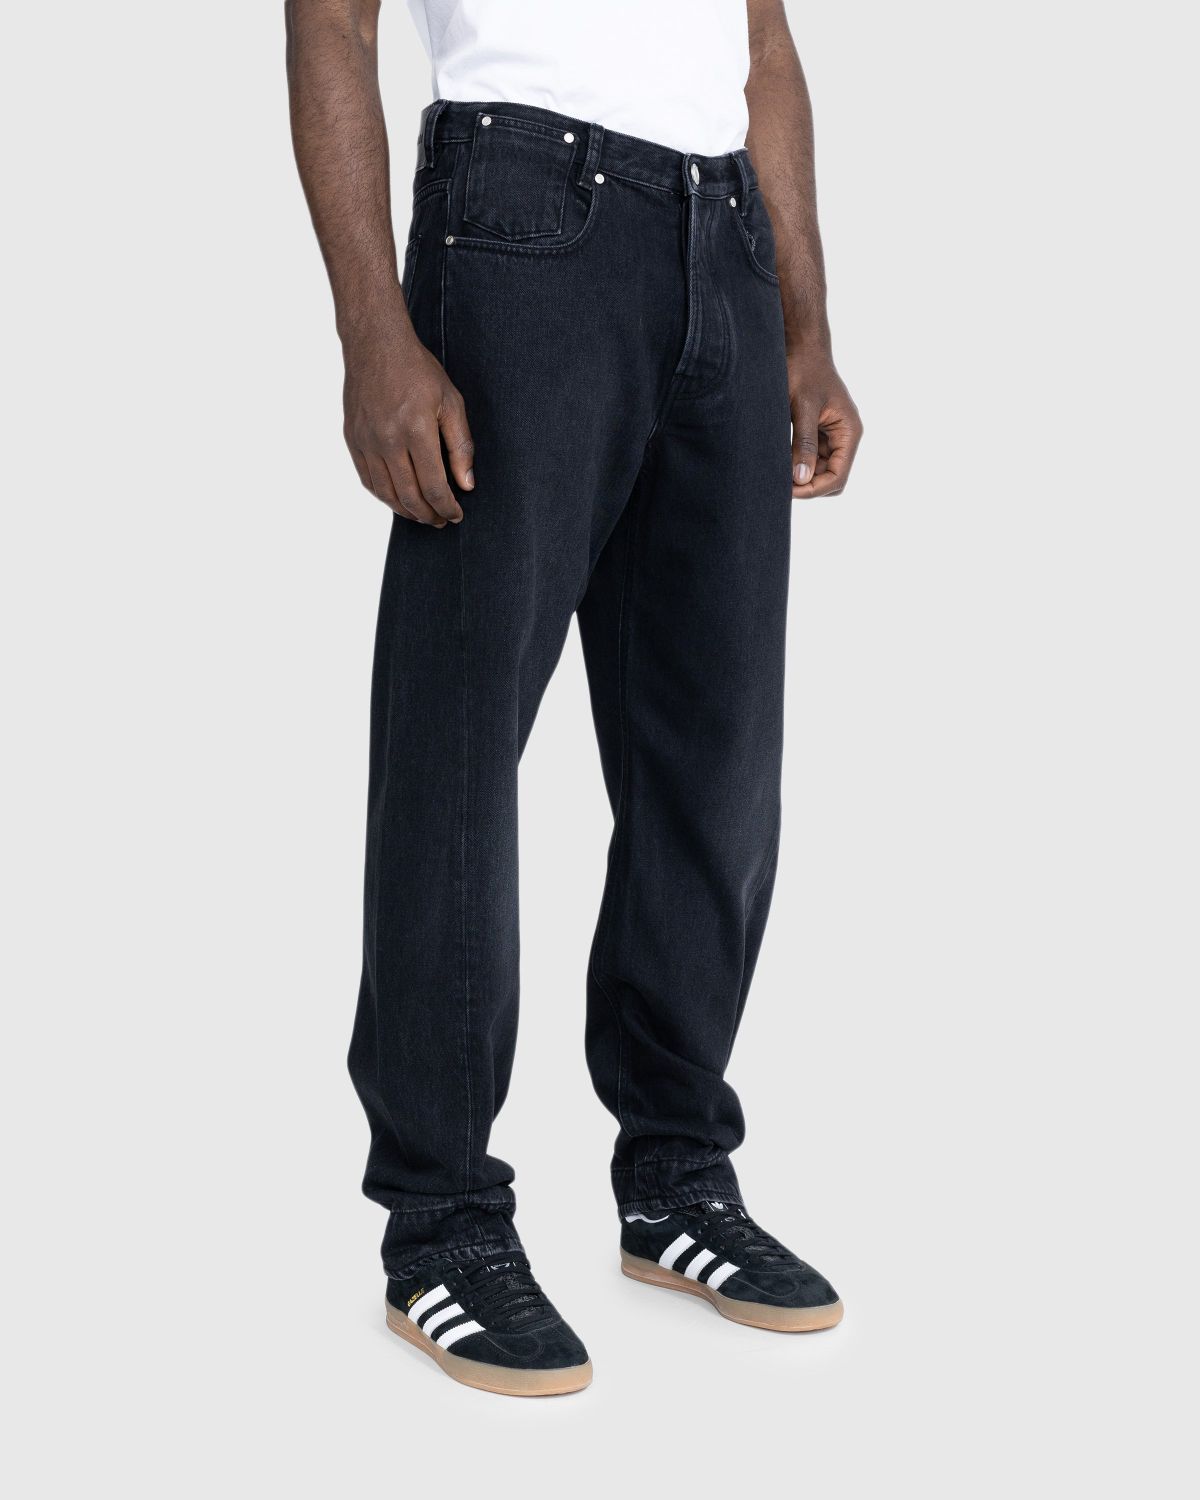 Trussardi – Five-Pocket Twisted Tapered Jeans Black Rigid